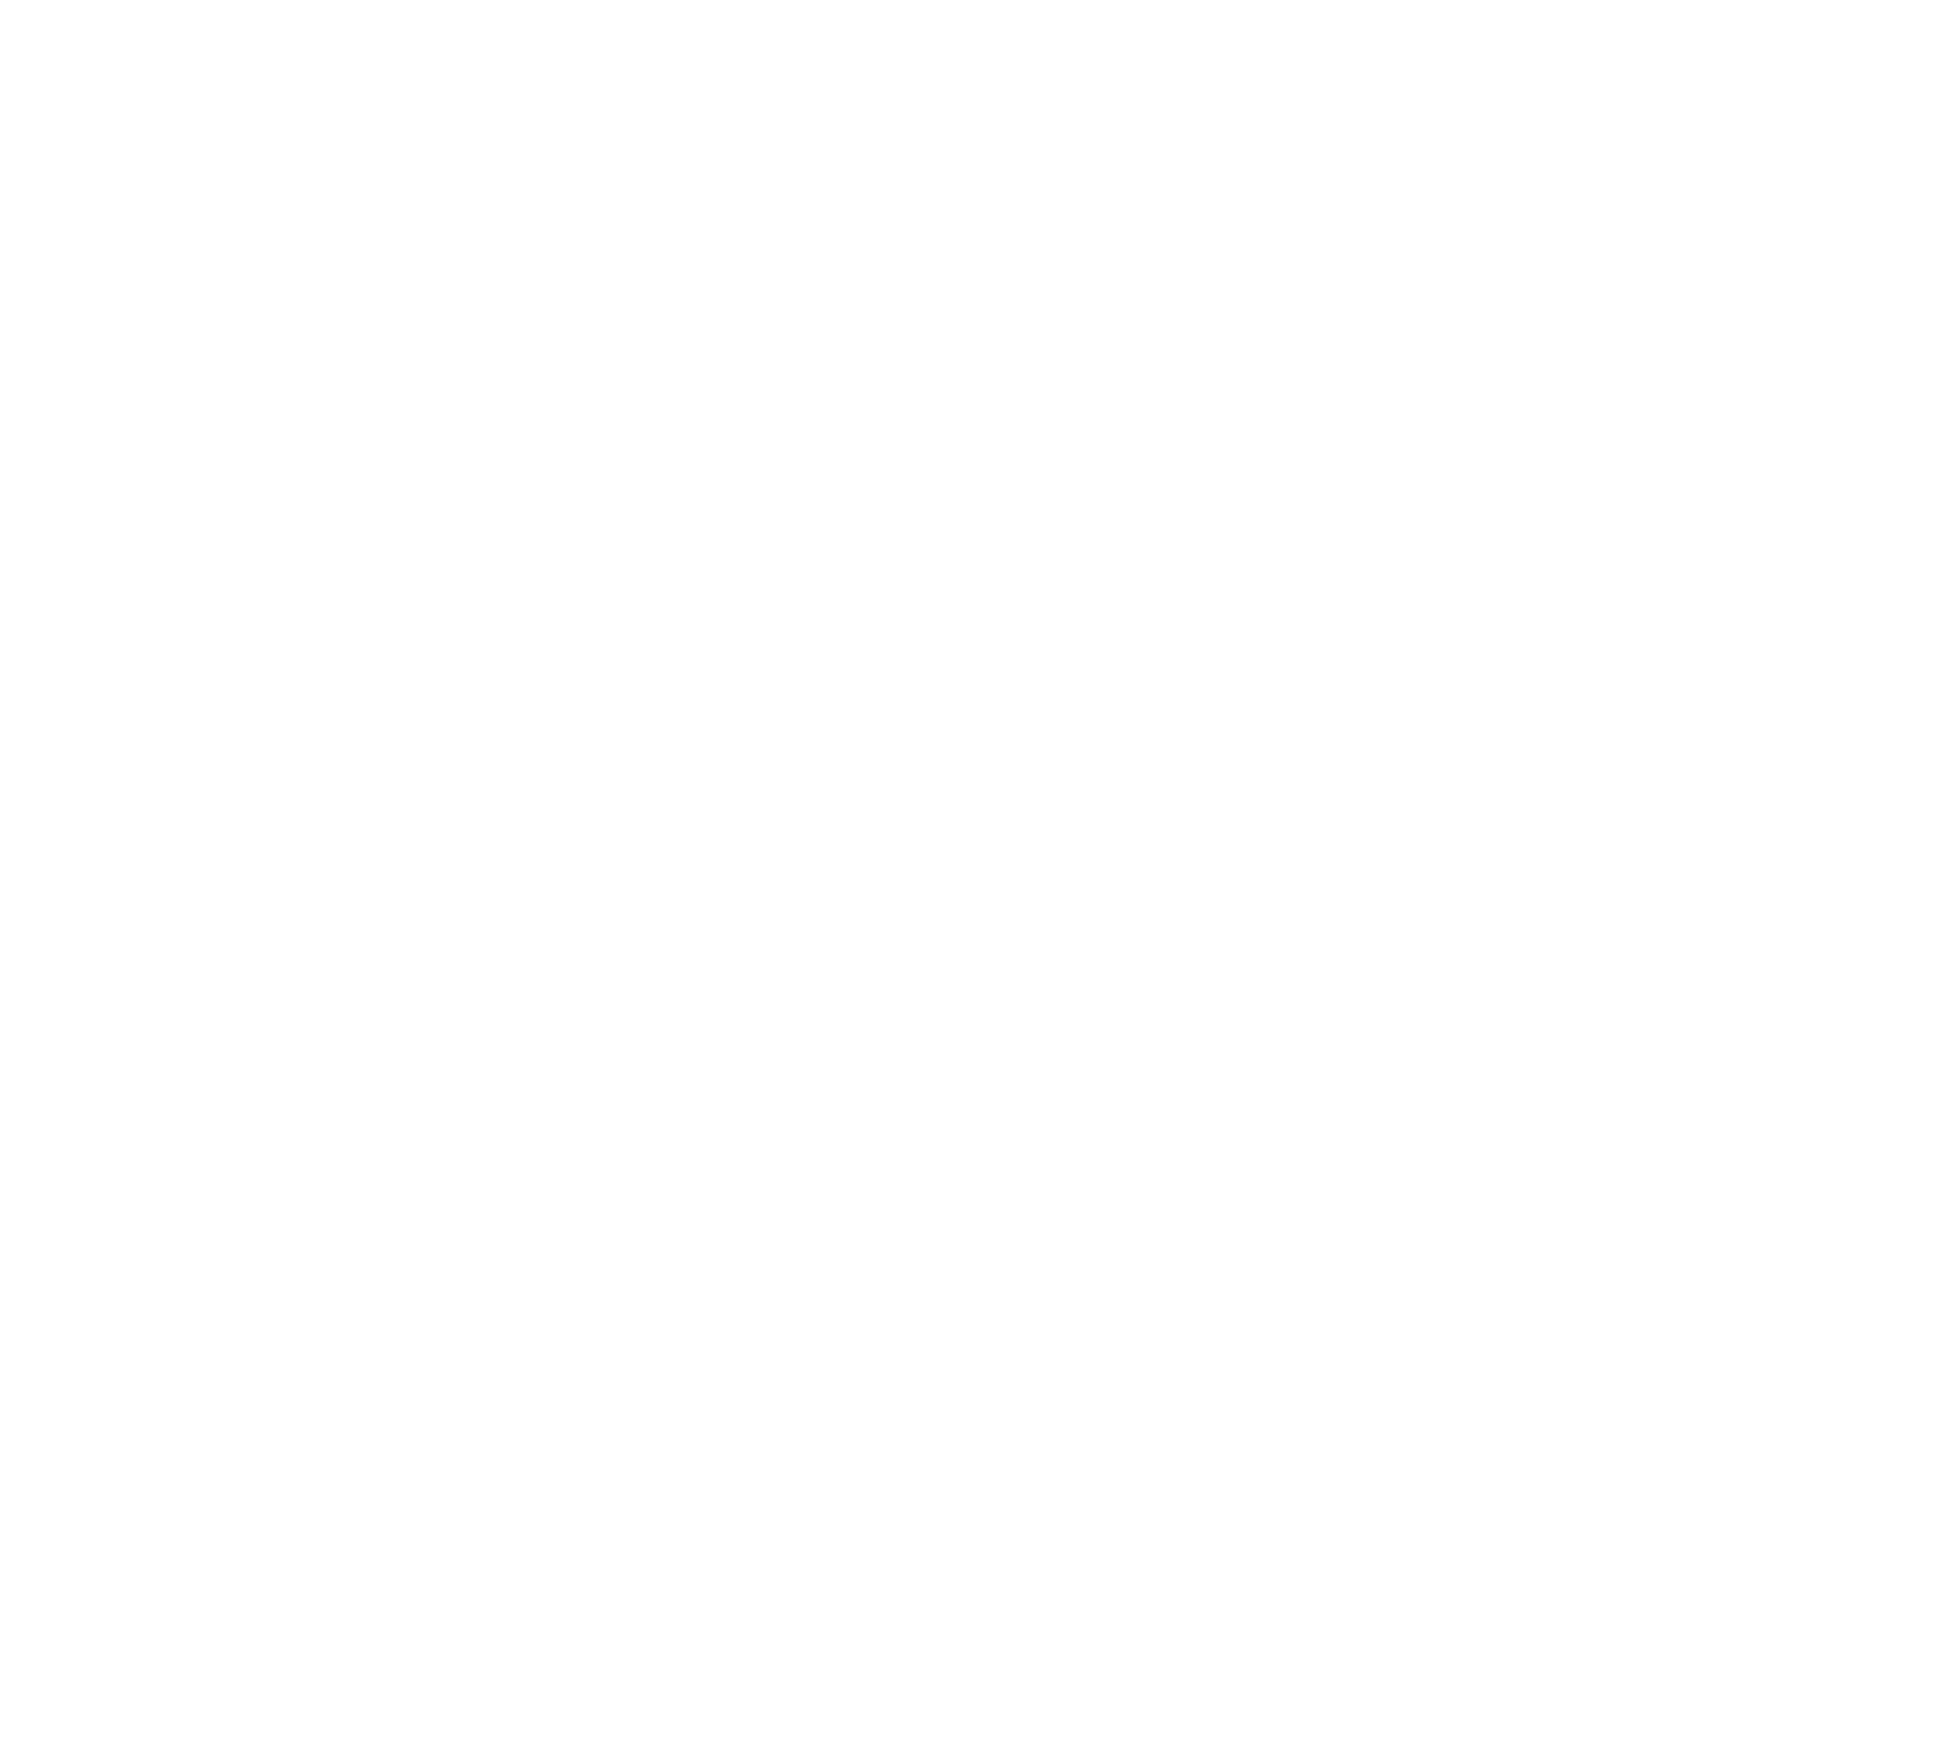 Thương hiệu tory burch logo thời trang cao cấp và sang trọng